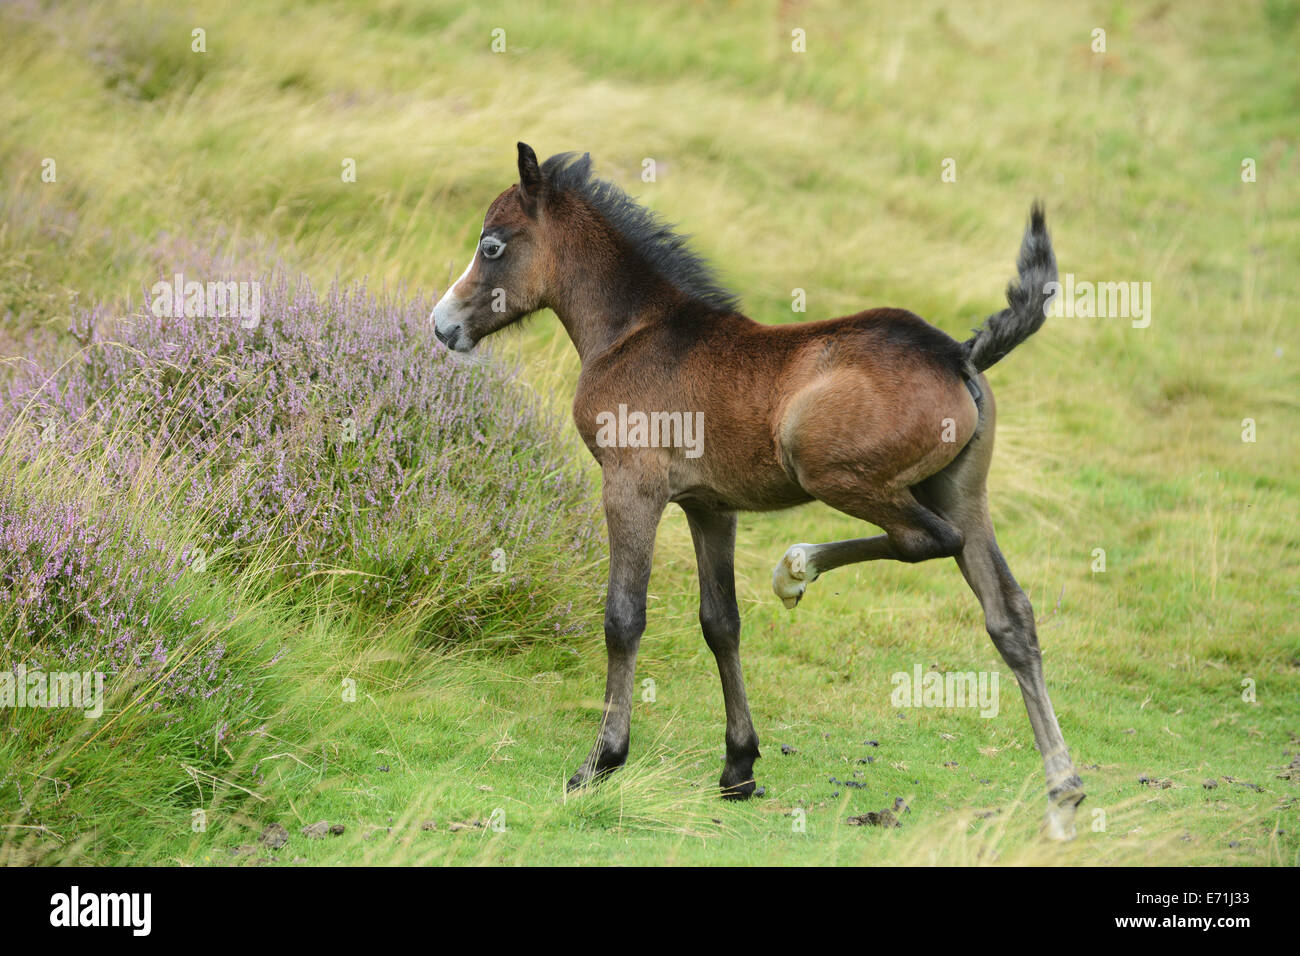 Wildes Pony Ponys Fohlen niedliche Tier lange Mynd Shropshire britischen Tierwelt Großbritannien Uk Stockfoto